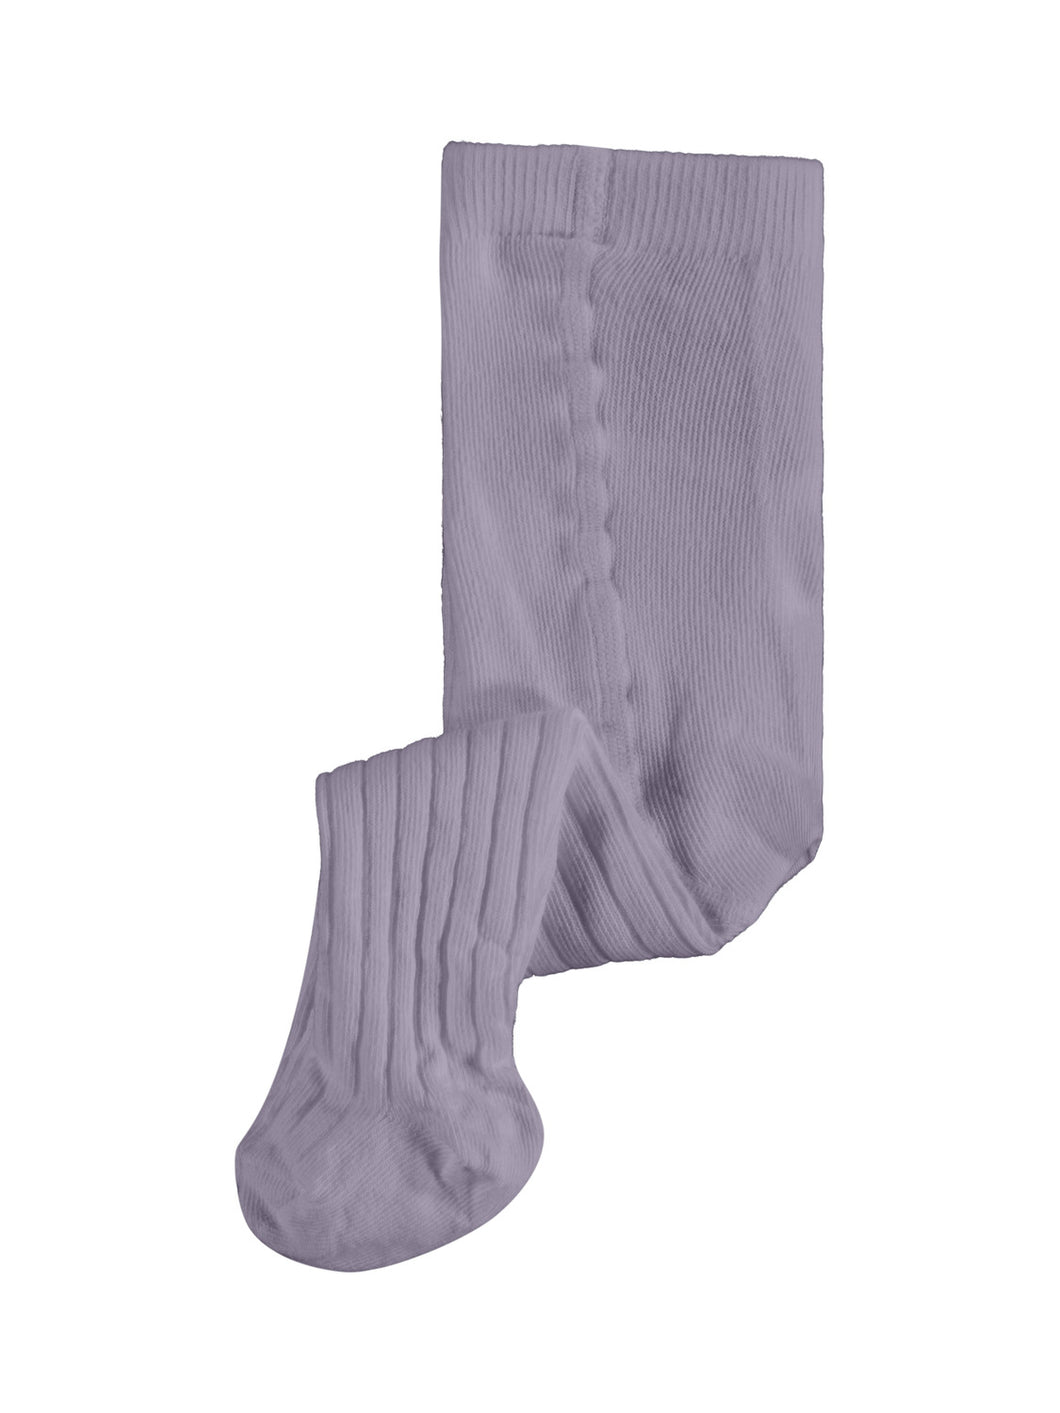 NBFLERIBBO Socks - Lavender Gray